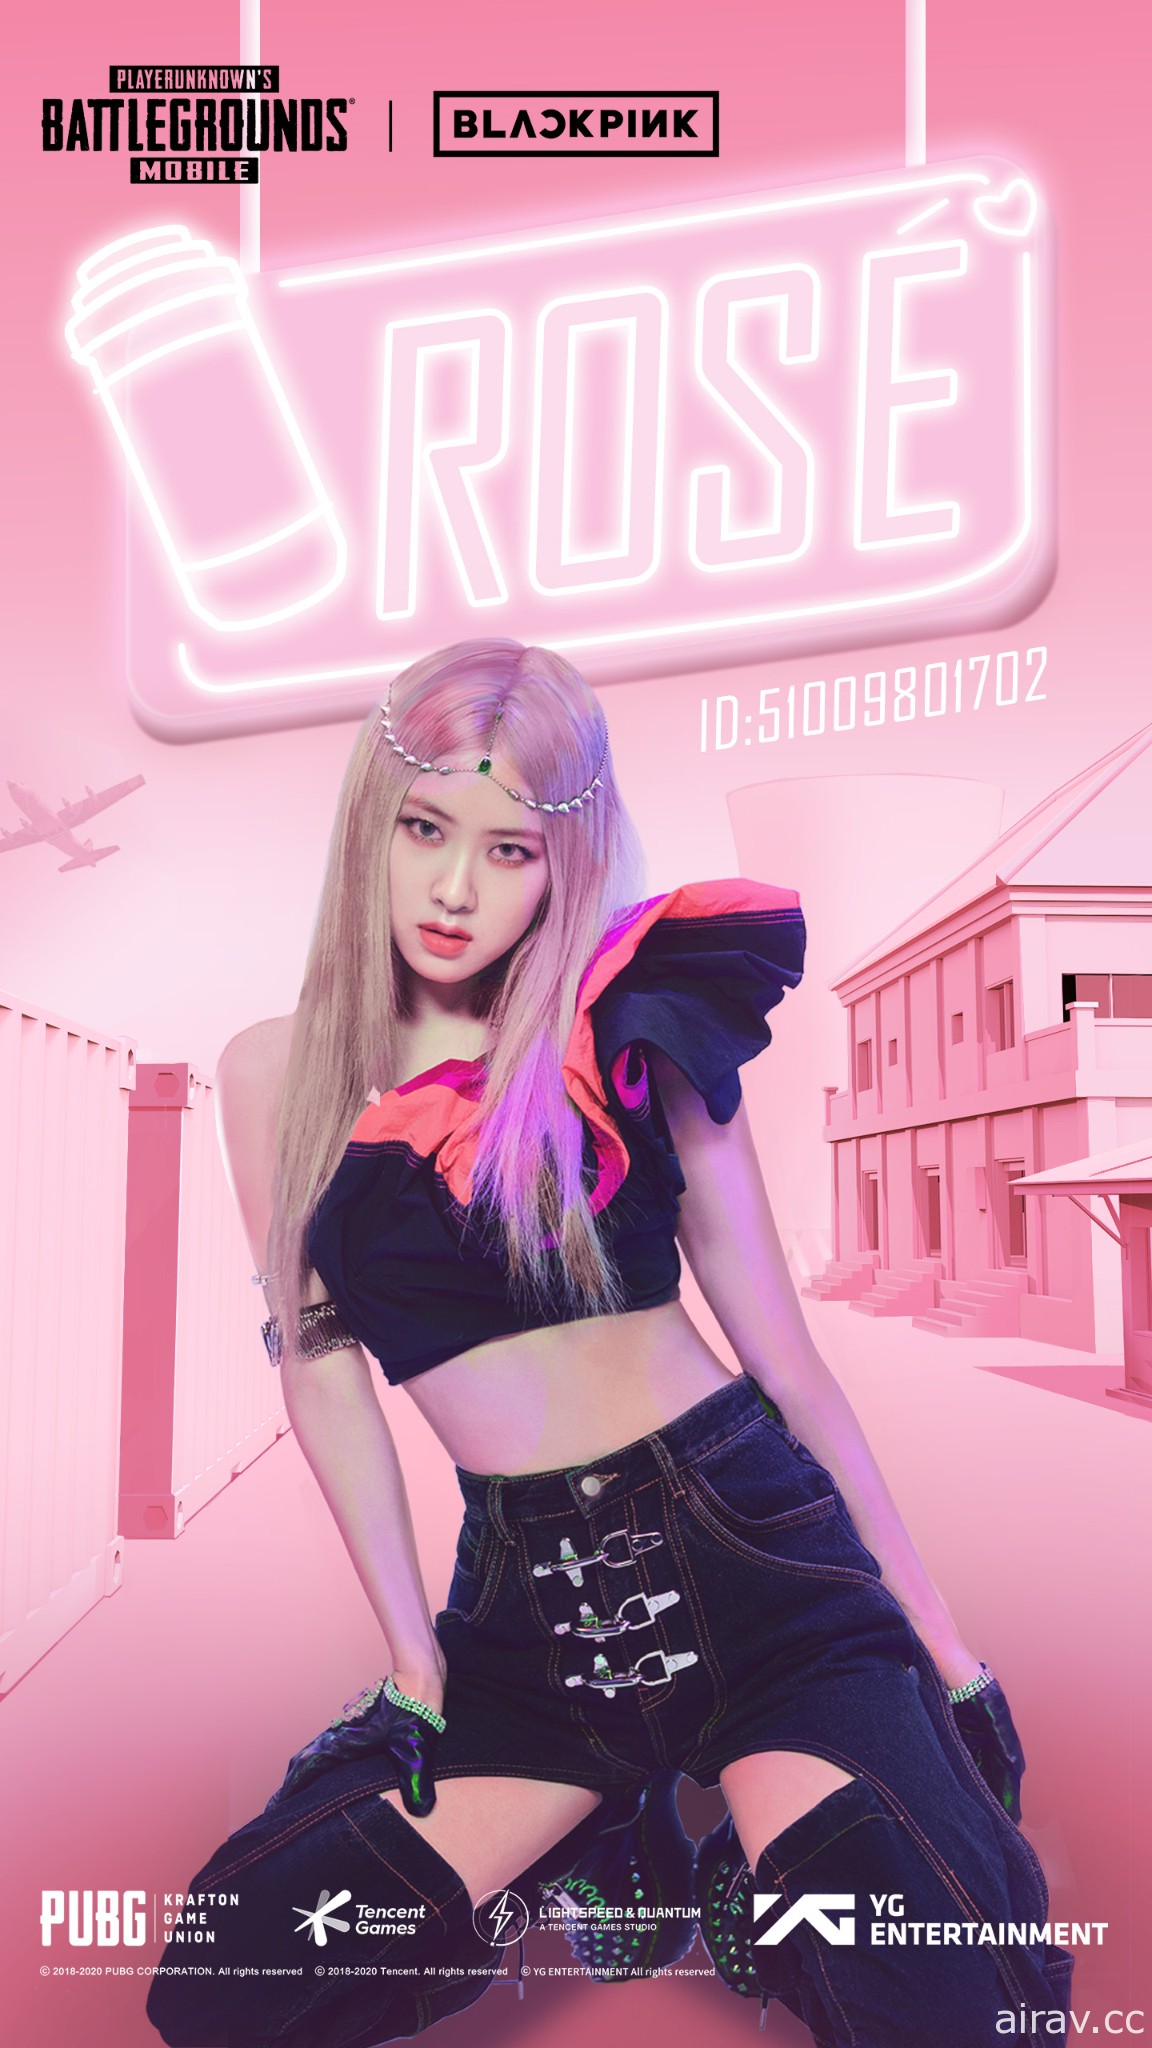 《PUBG MOBILE》与韩国女子偶像团体 BLACKPINK 展开合作 公开角色 ID